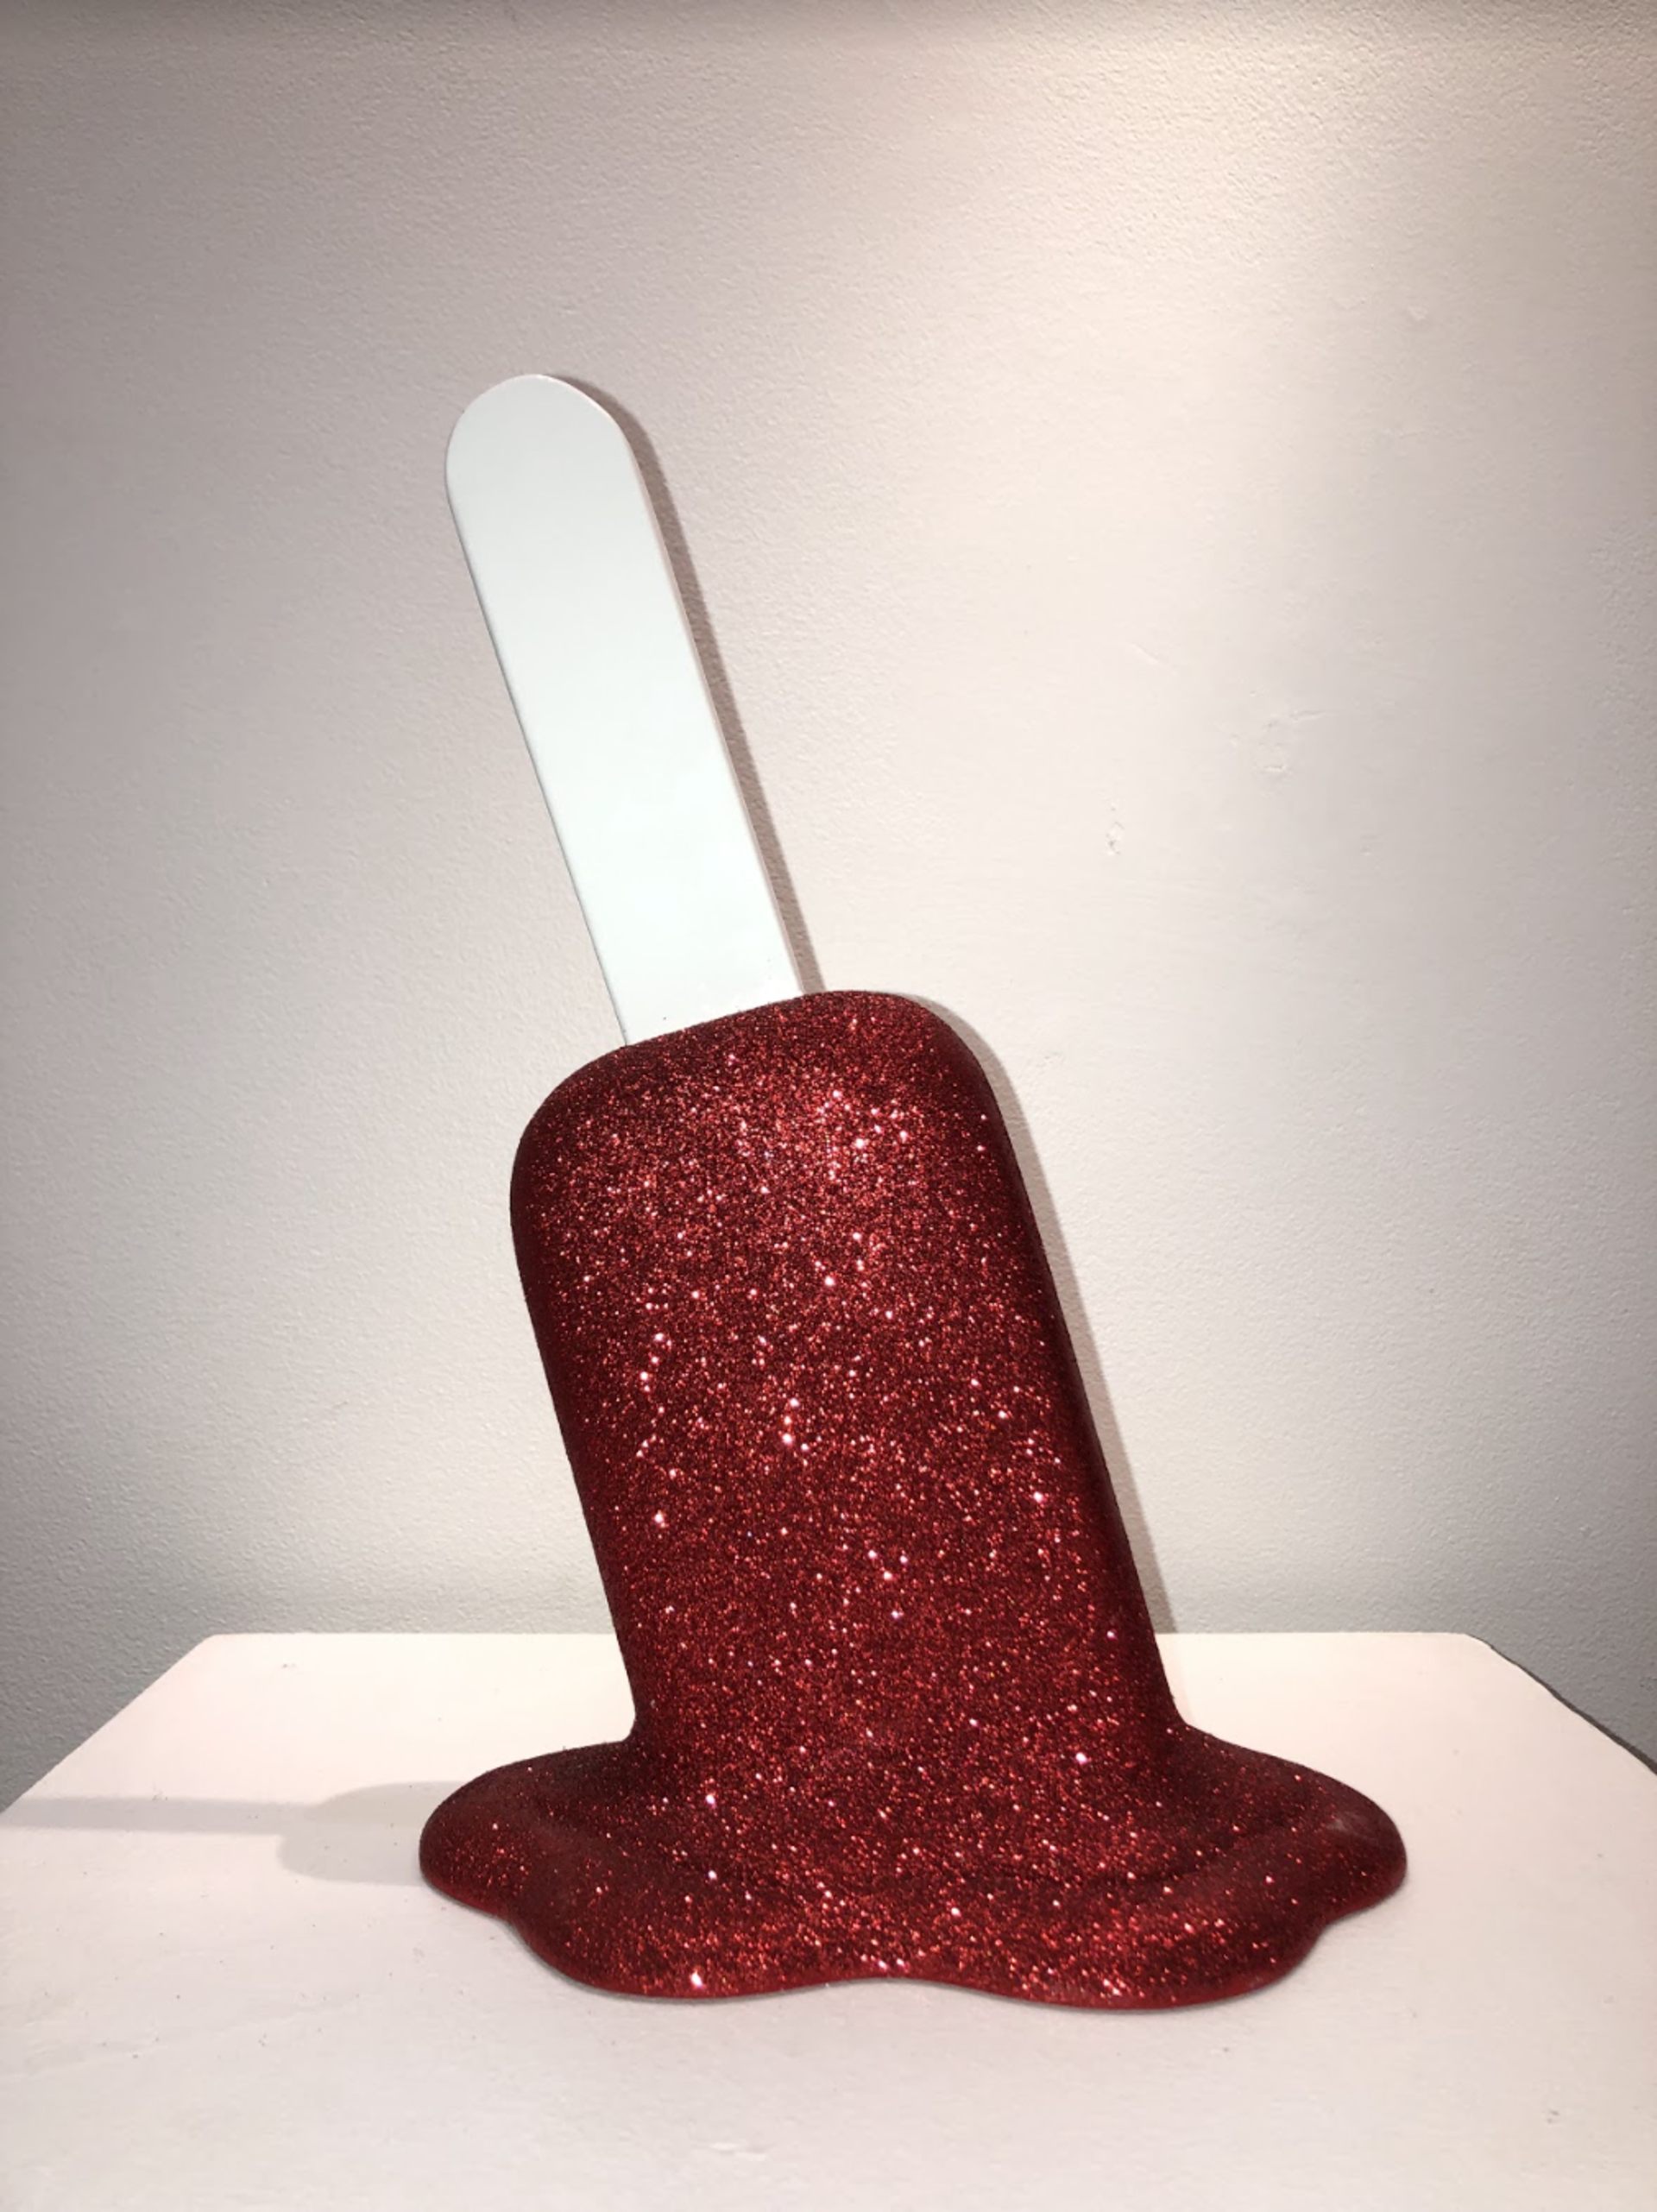 The Sweet Life Glitter Red Popsicle by Elena Bulatova